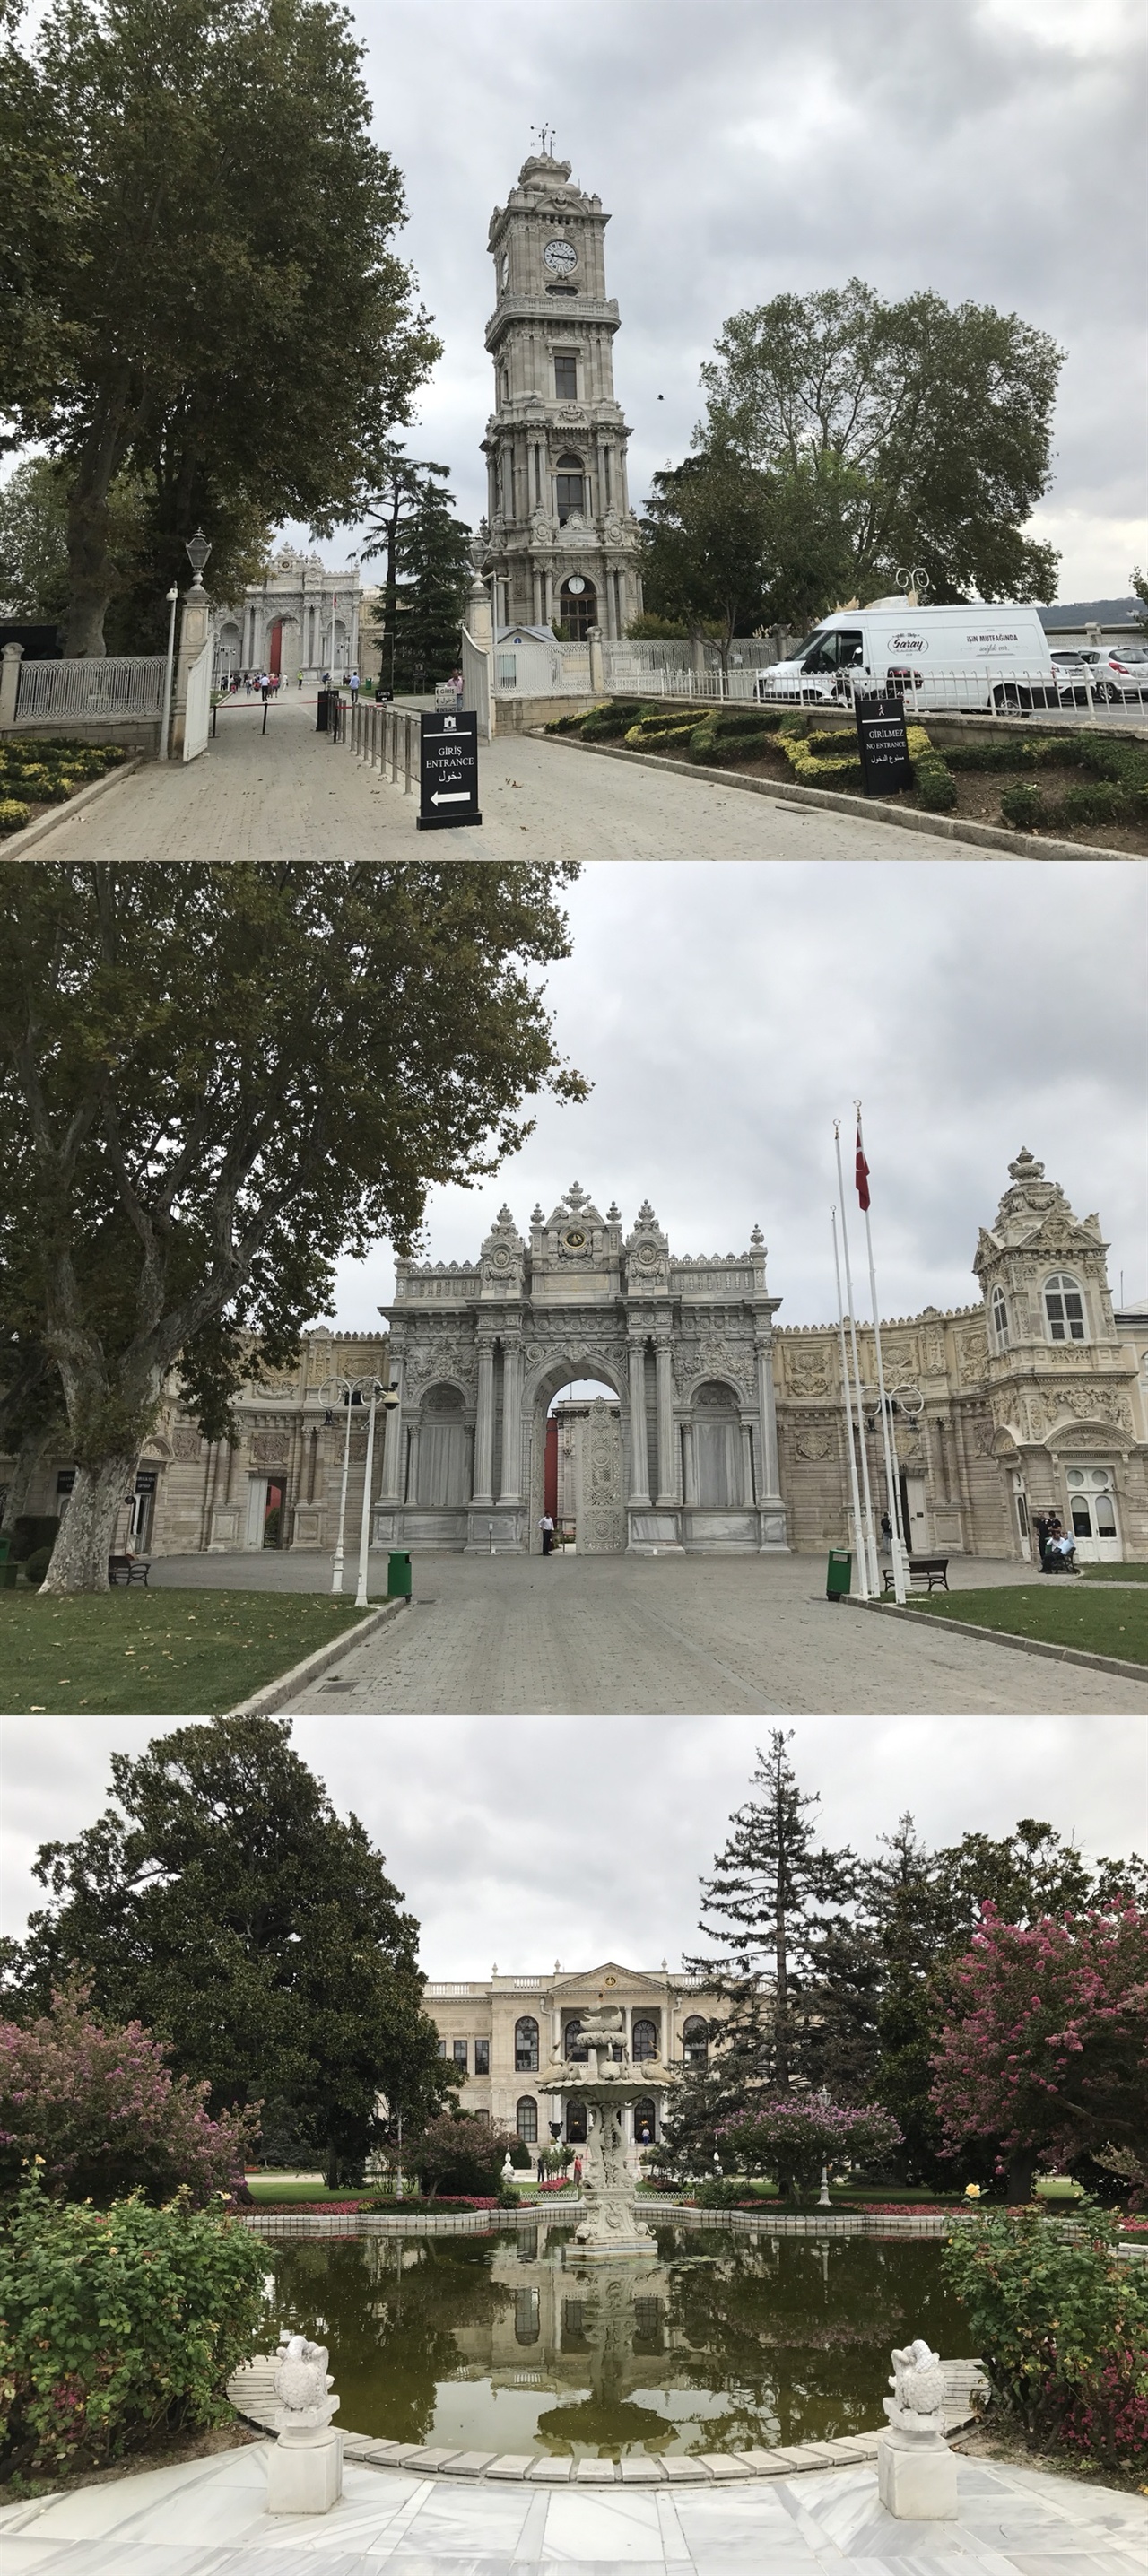 1. 돌마바흐체 궁전 앞 시계탑
2. 돌마바흐체 궁전 입구
3. 돌마바흐체 궁전 내부